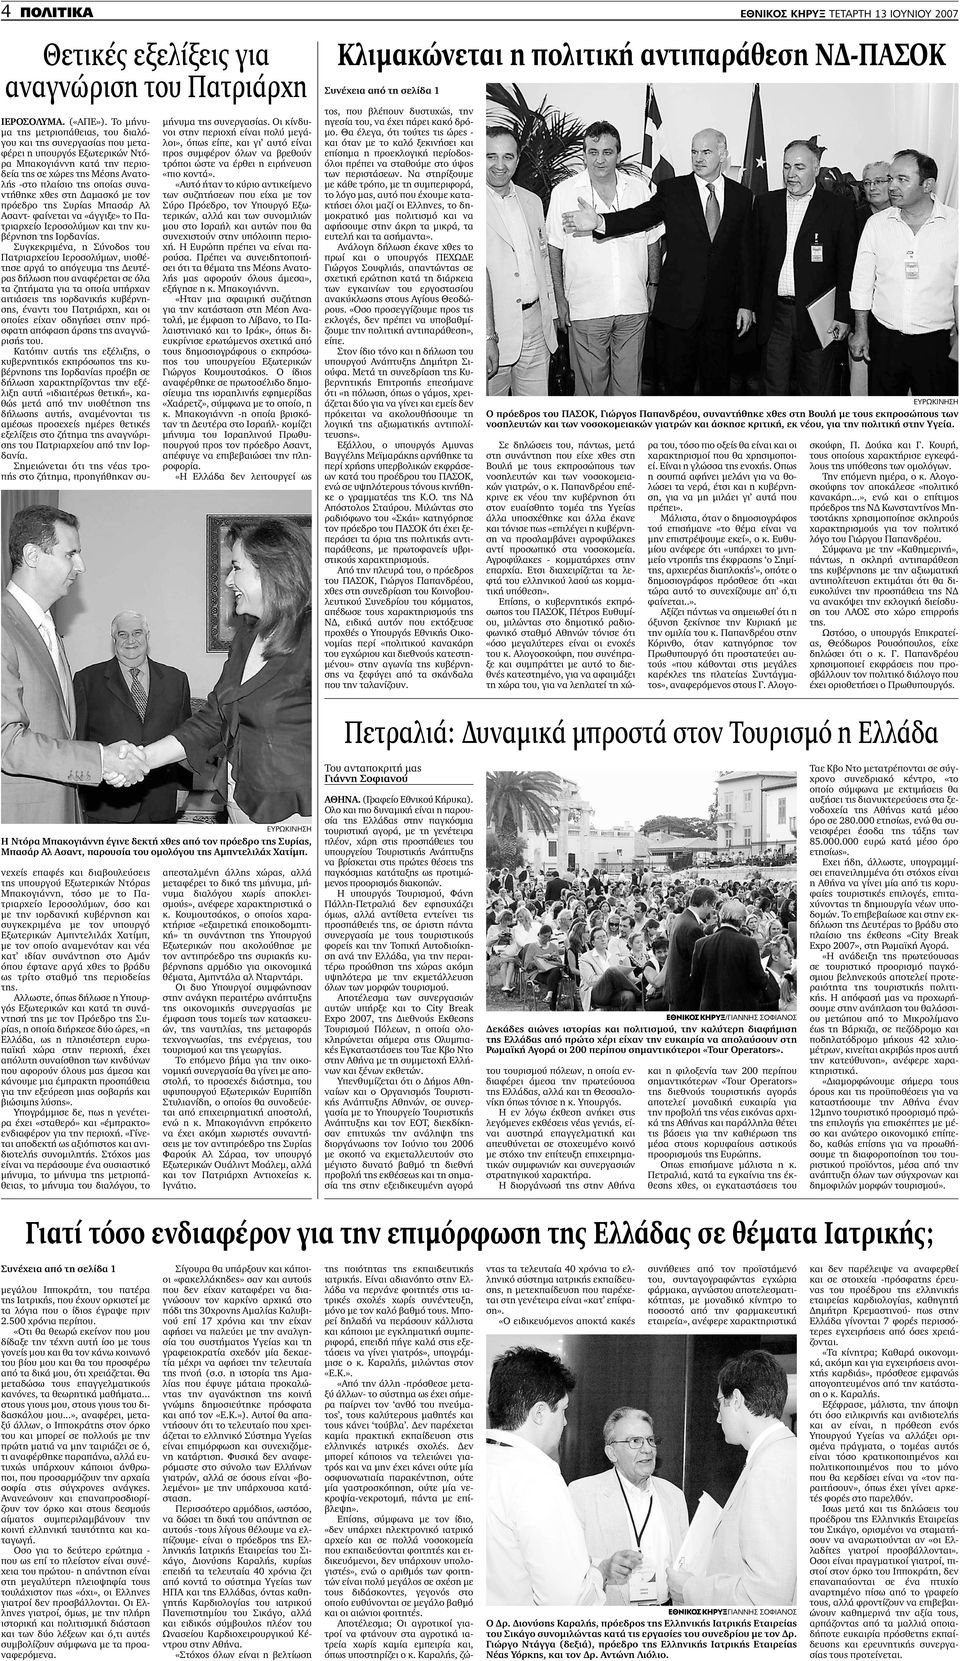 συναντήθηκε χθες στη αµασκό µε τον πρόεδρο της Συρίας Μπασάρ Αλ Ασαντ- φαίνεται να «άγγιξε» το Πατριαρχείο Ιεροσολύµων και την κυβέρνηση της Ιορδανίας.